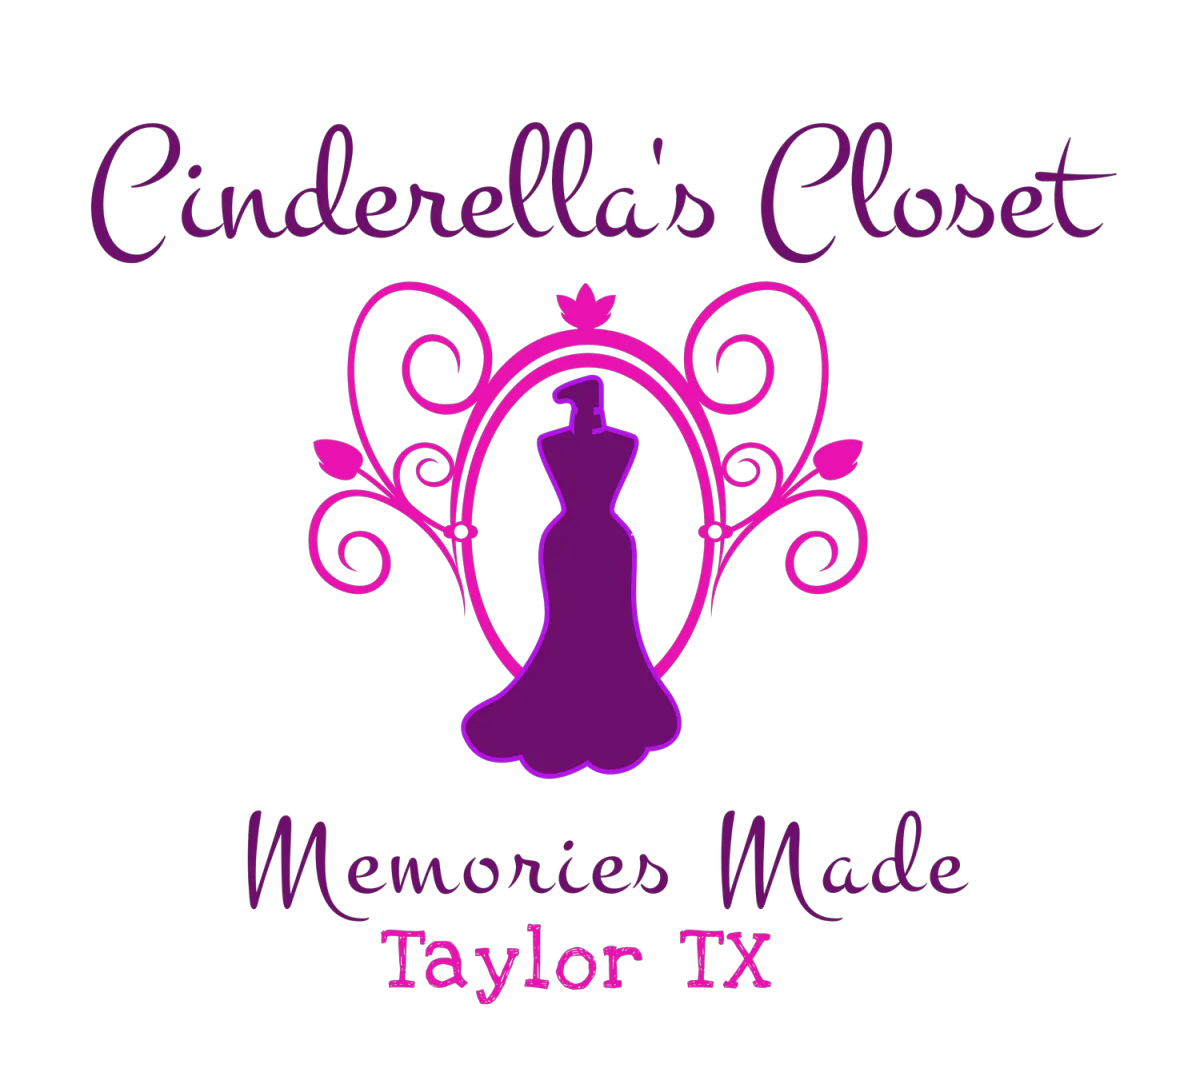 Cindrella's Closet Taylor Texas